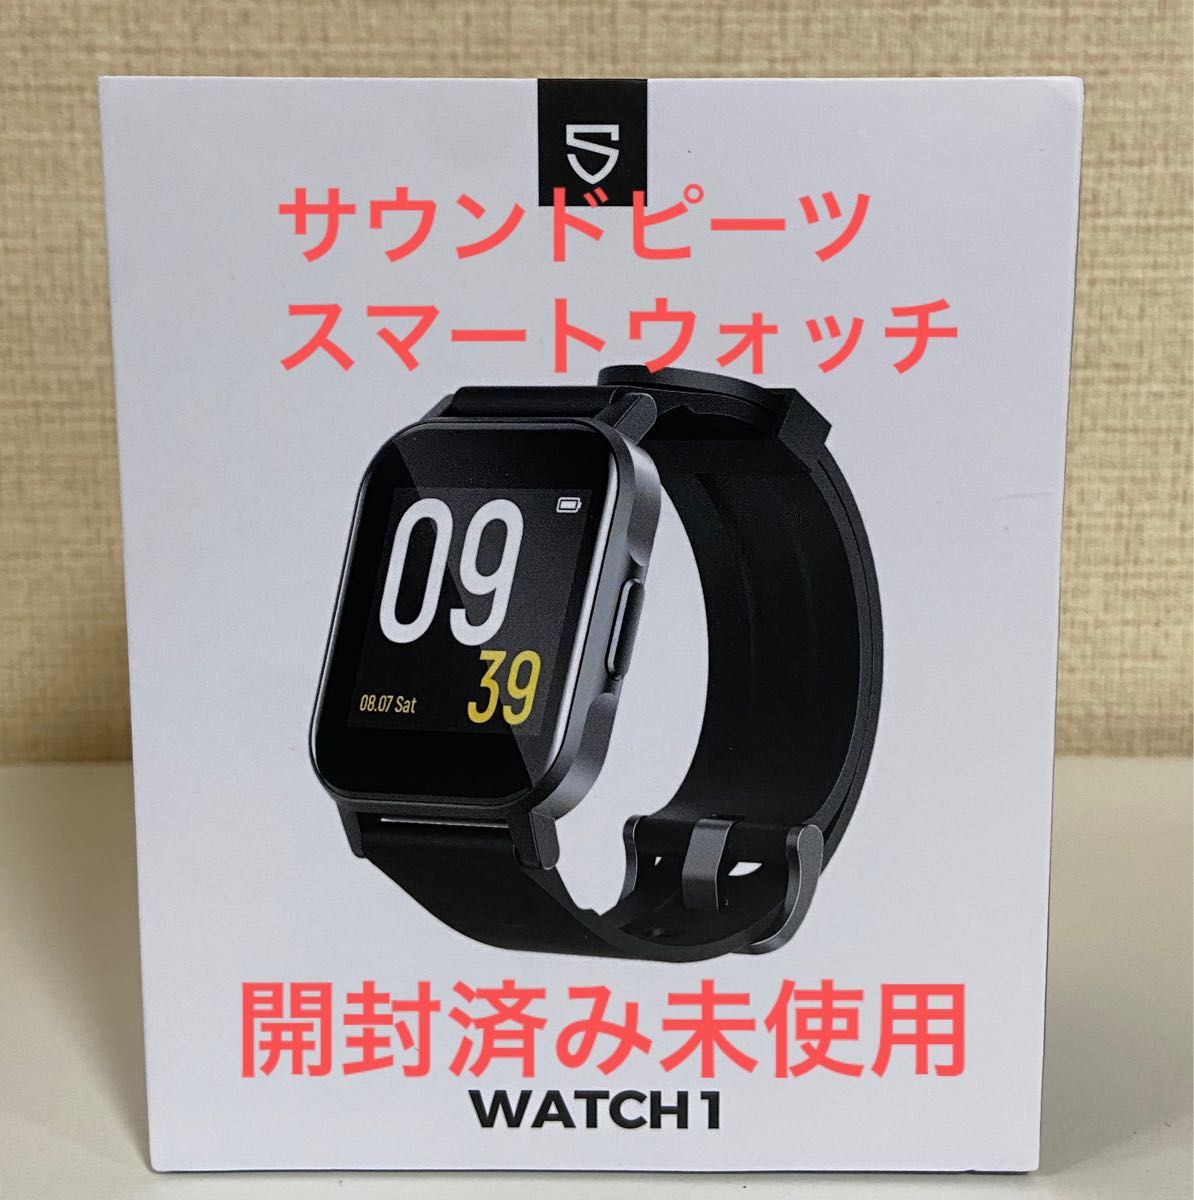 スマートウォッチ SoundPEATS Watch1 メンズ レディース キッズスマートウォッチ 子供用 サウンドピーツ 腕時計